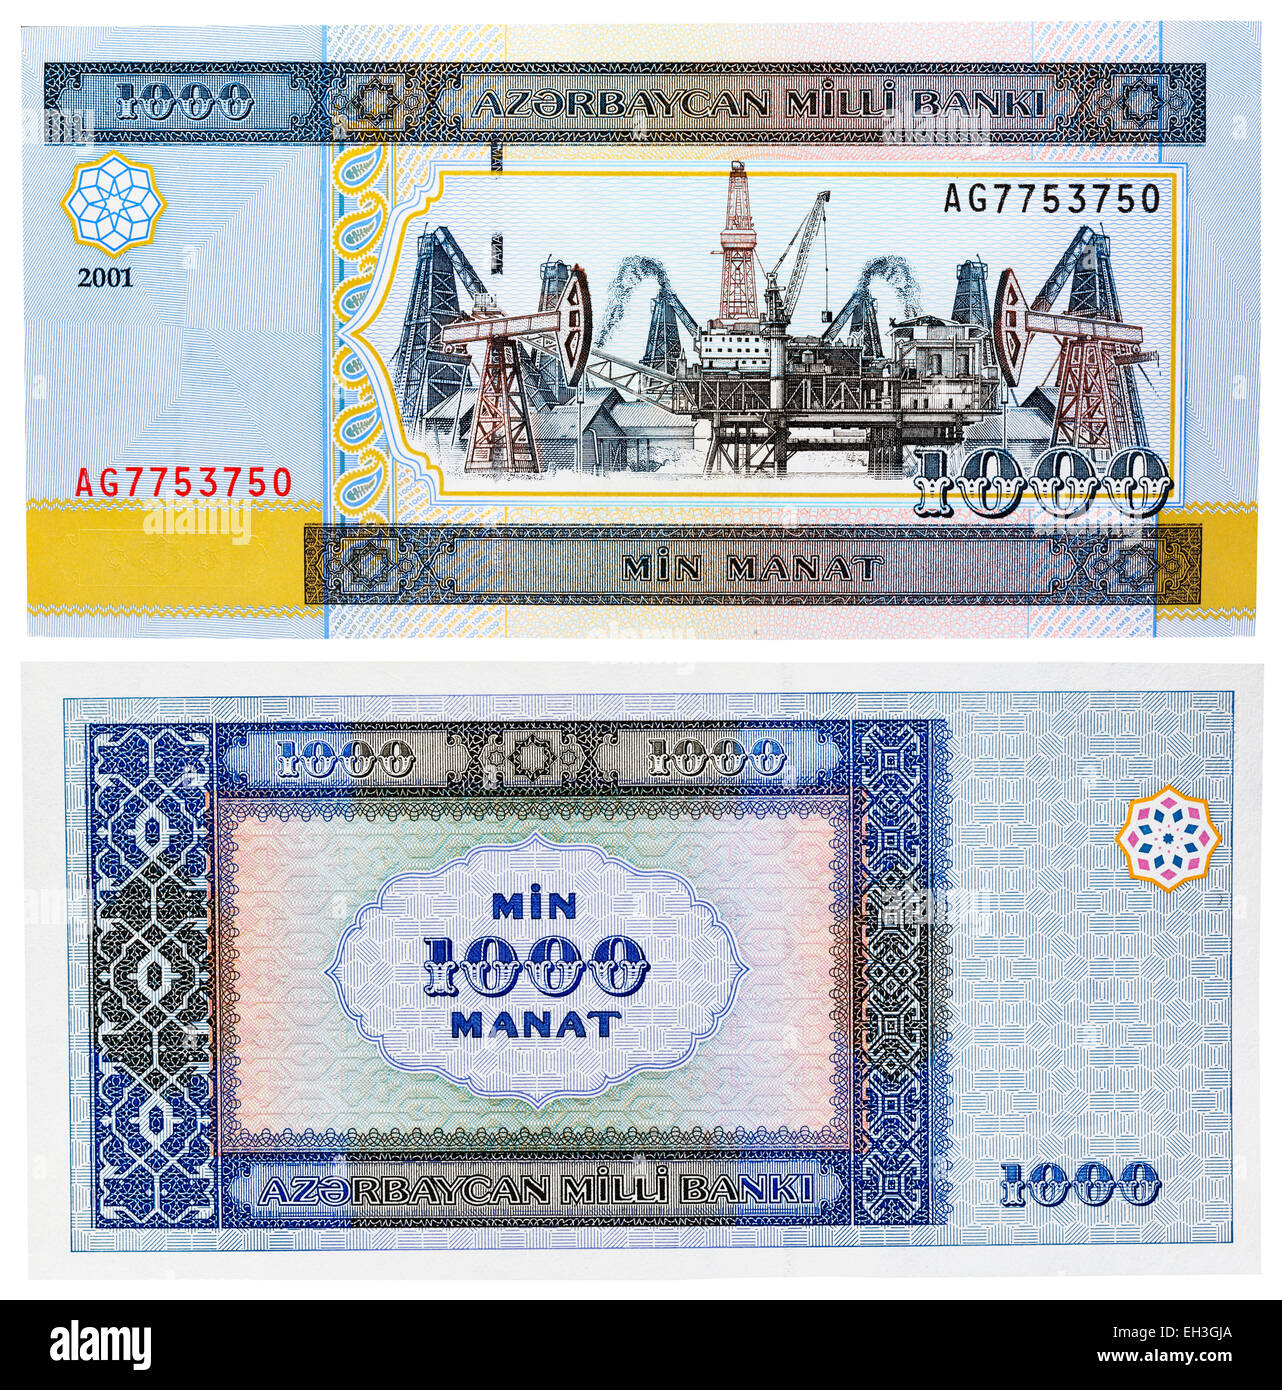 1000 manat banknote, Azerbaijan, 2001 Stock Photo